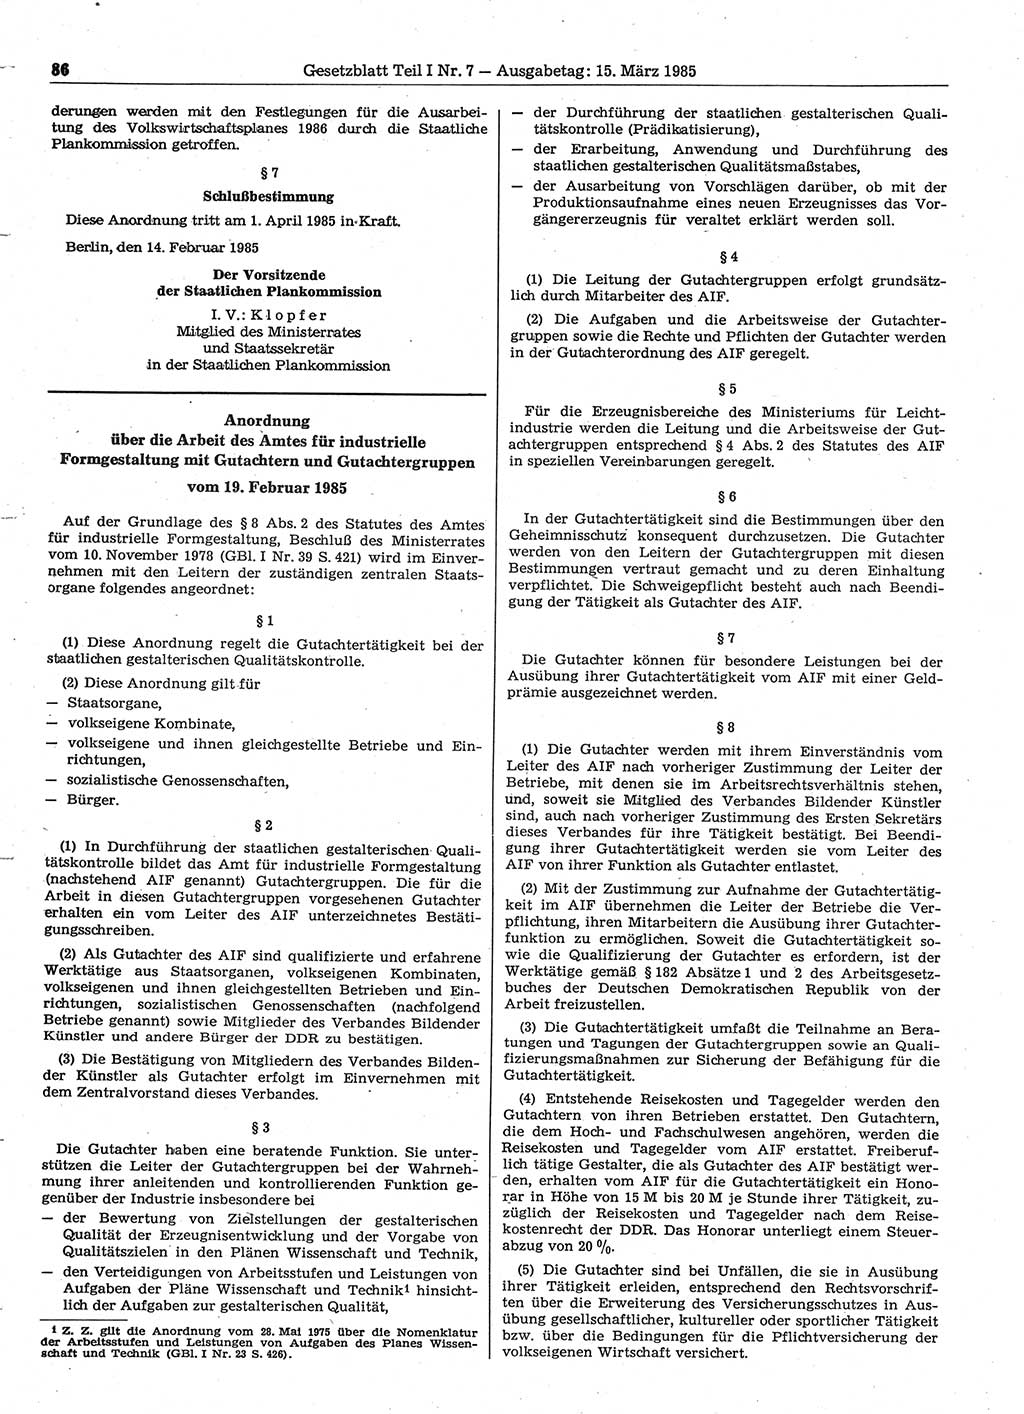 Gesetzblatt (GBl.) der Deutschen Demokratischen Republik (DDR) Teil Ⅰ 1985, Seite 86 (GBl. DDR Ⅰ 1985, S. 86)